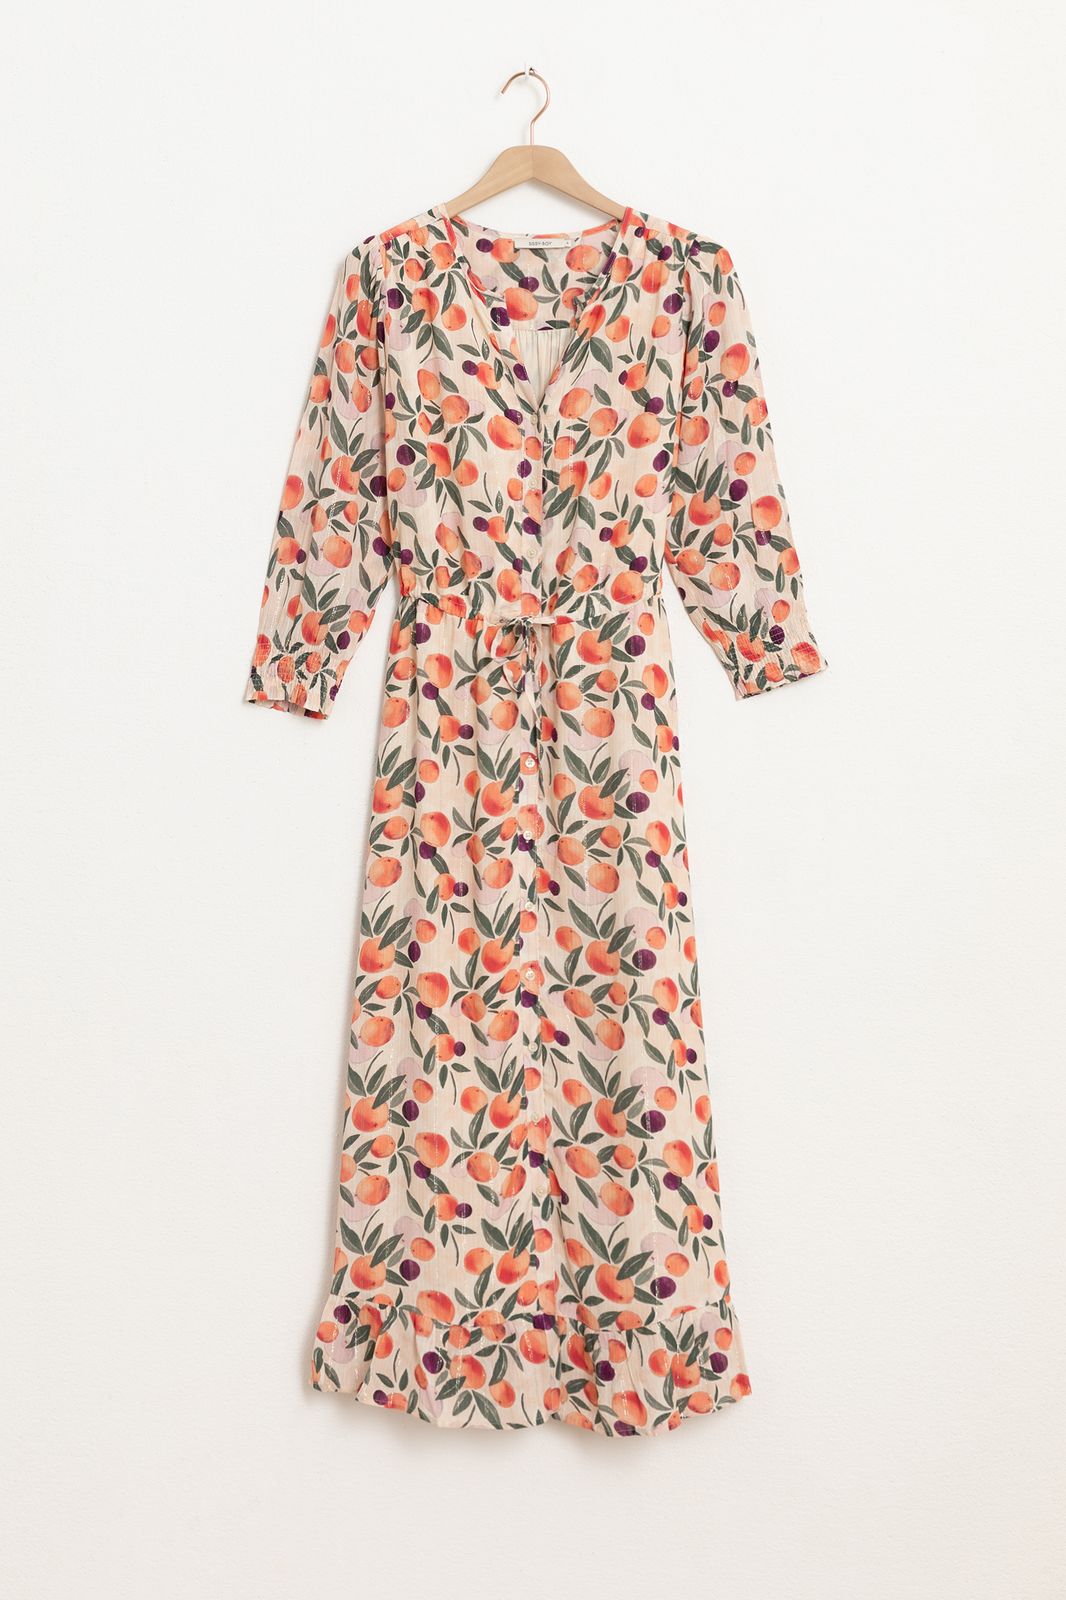 Wickelkleid mit Orangen-Print und Lurex-Details - hellrosa